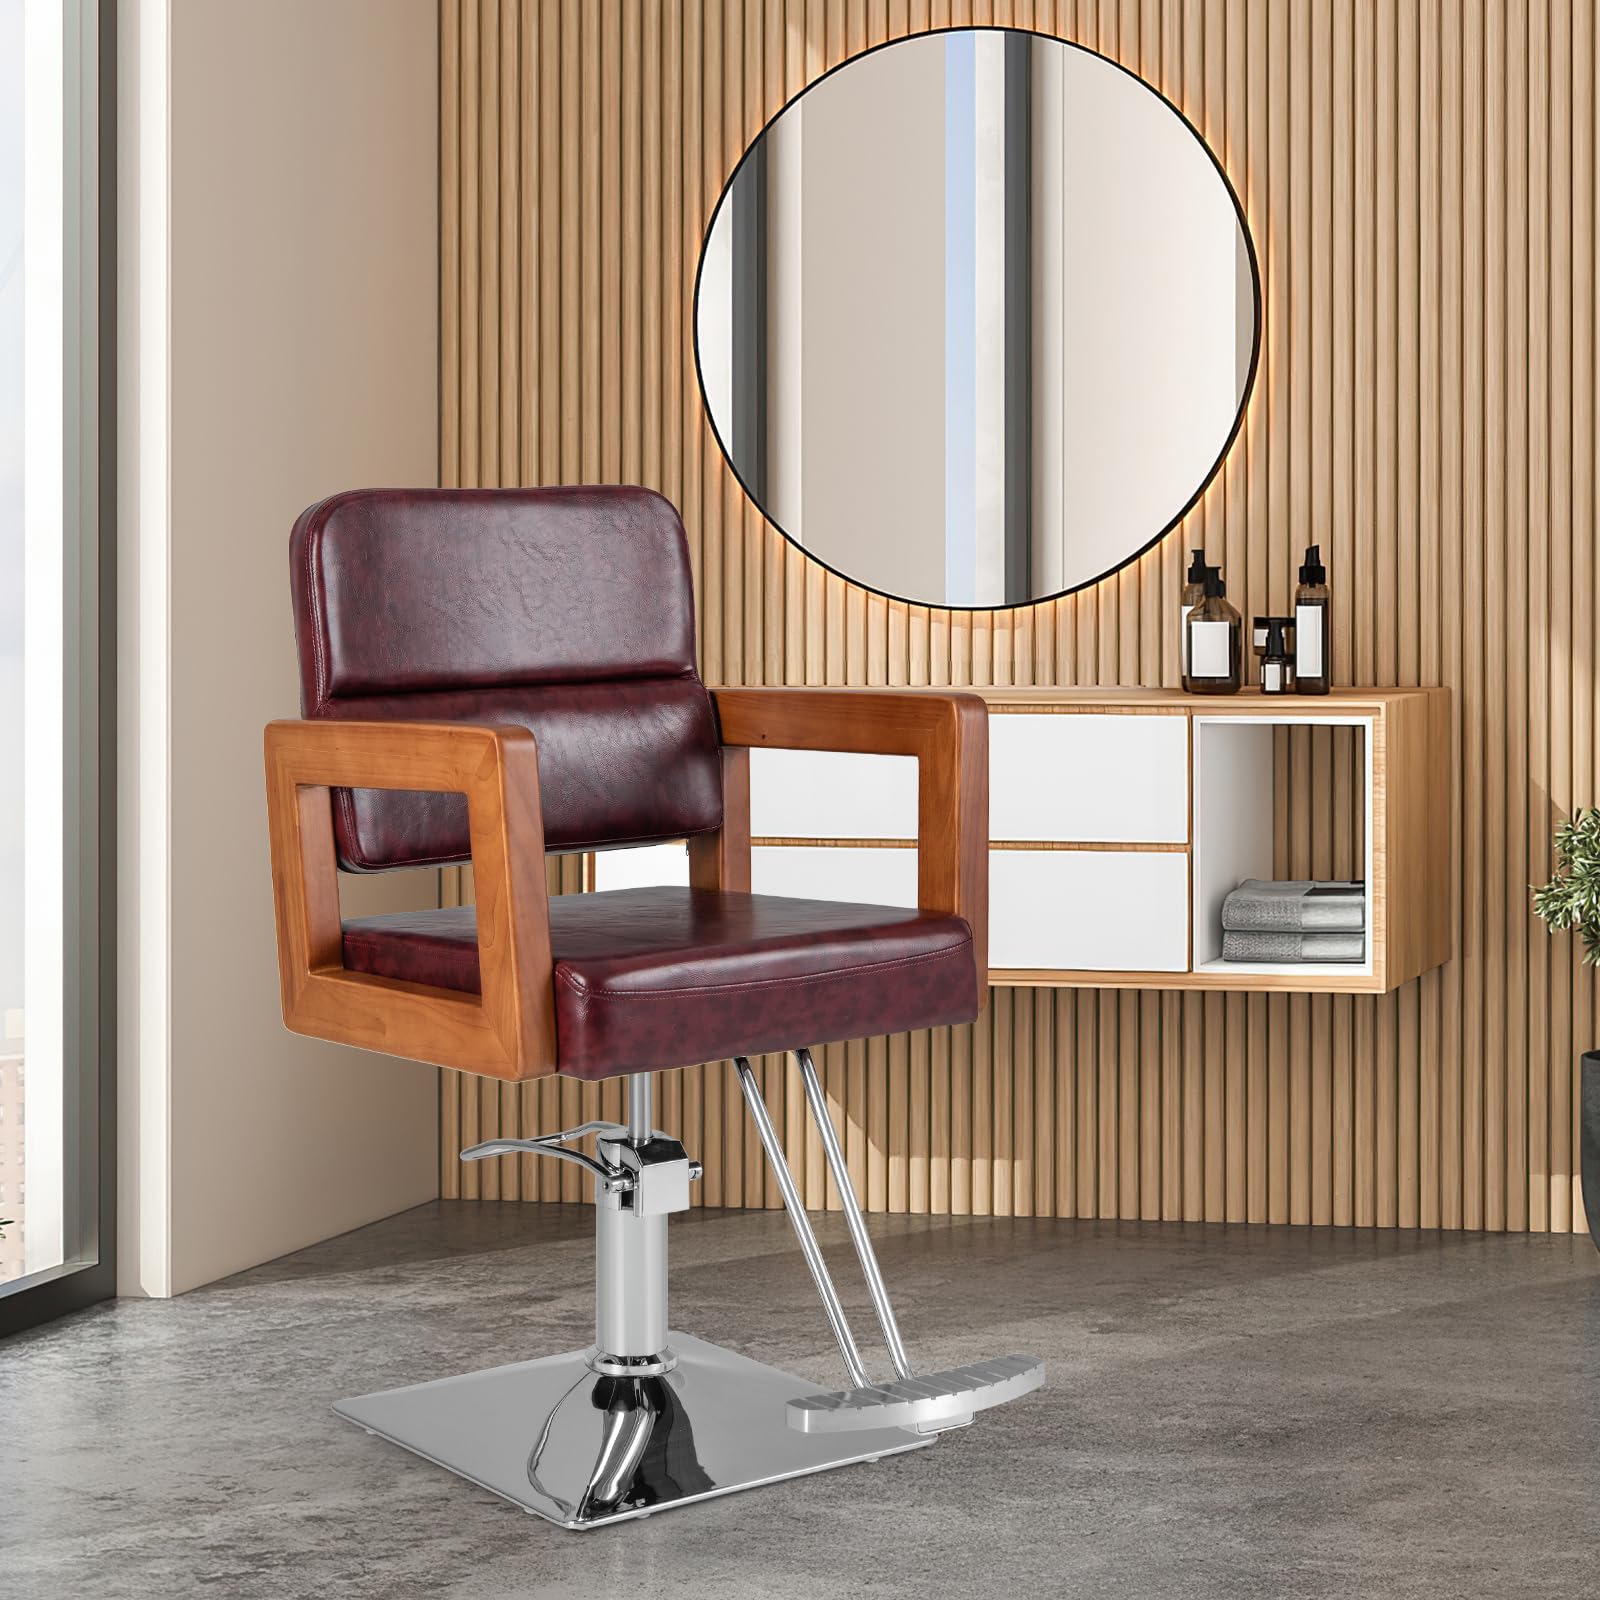 Giantex Barber Chair - Salon Chair for Hair Stylist